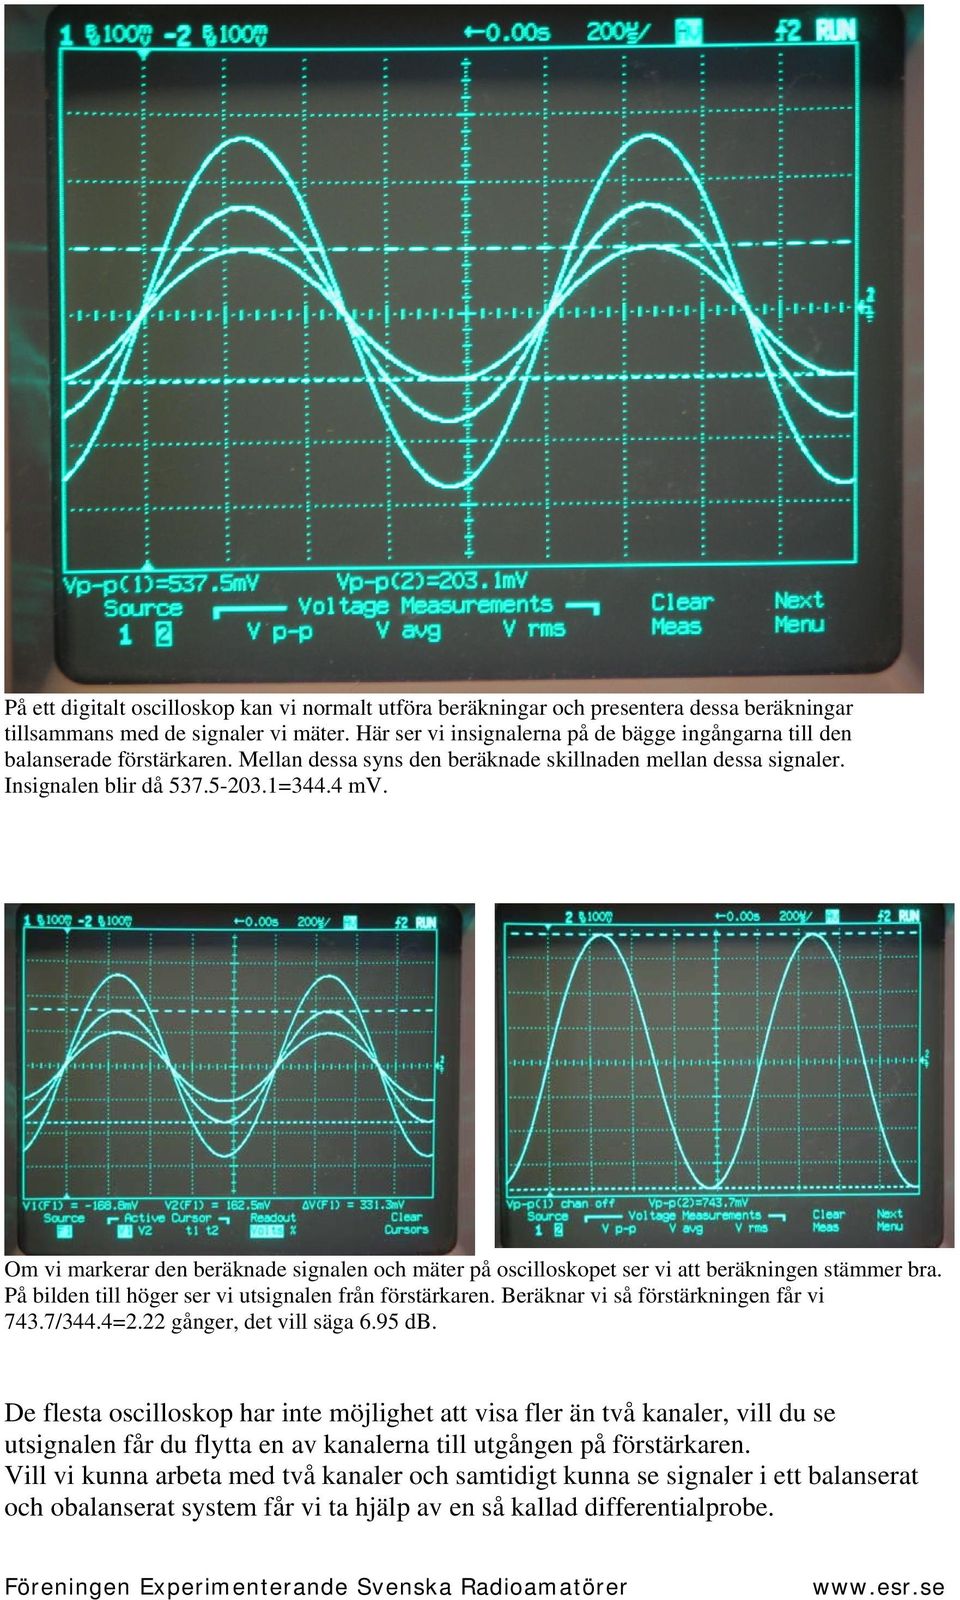 Om vi markerar den beräknade signalen och mäter på oscilloskopet ser vi att beräkningen stämmer bra. På bilden till höger ser vi utsignalen från förstärkaren. Beräknar vi så förstärkningen får vi 743.